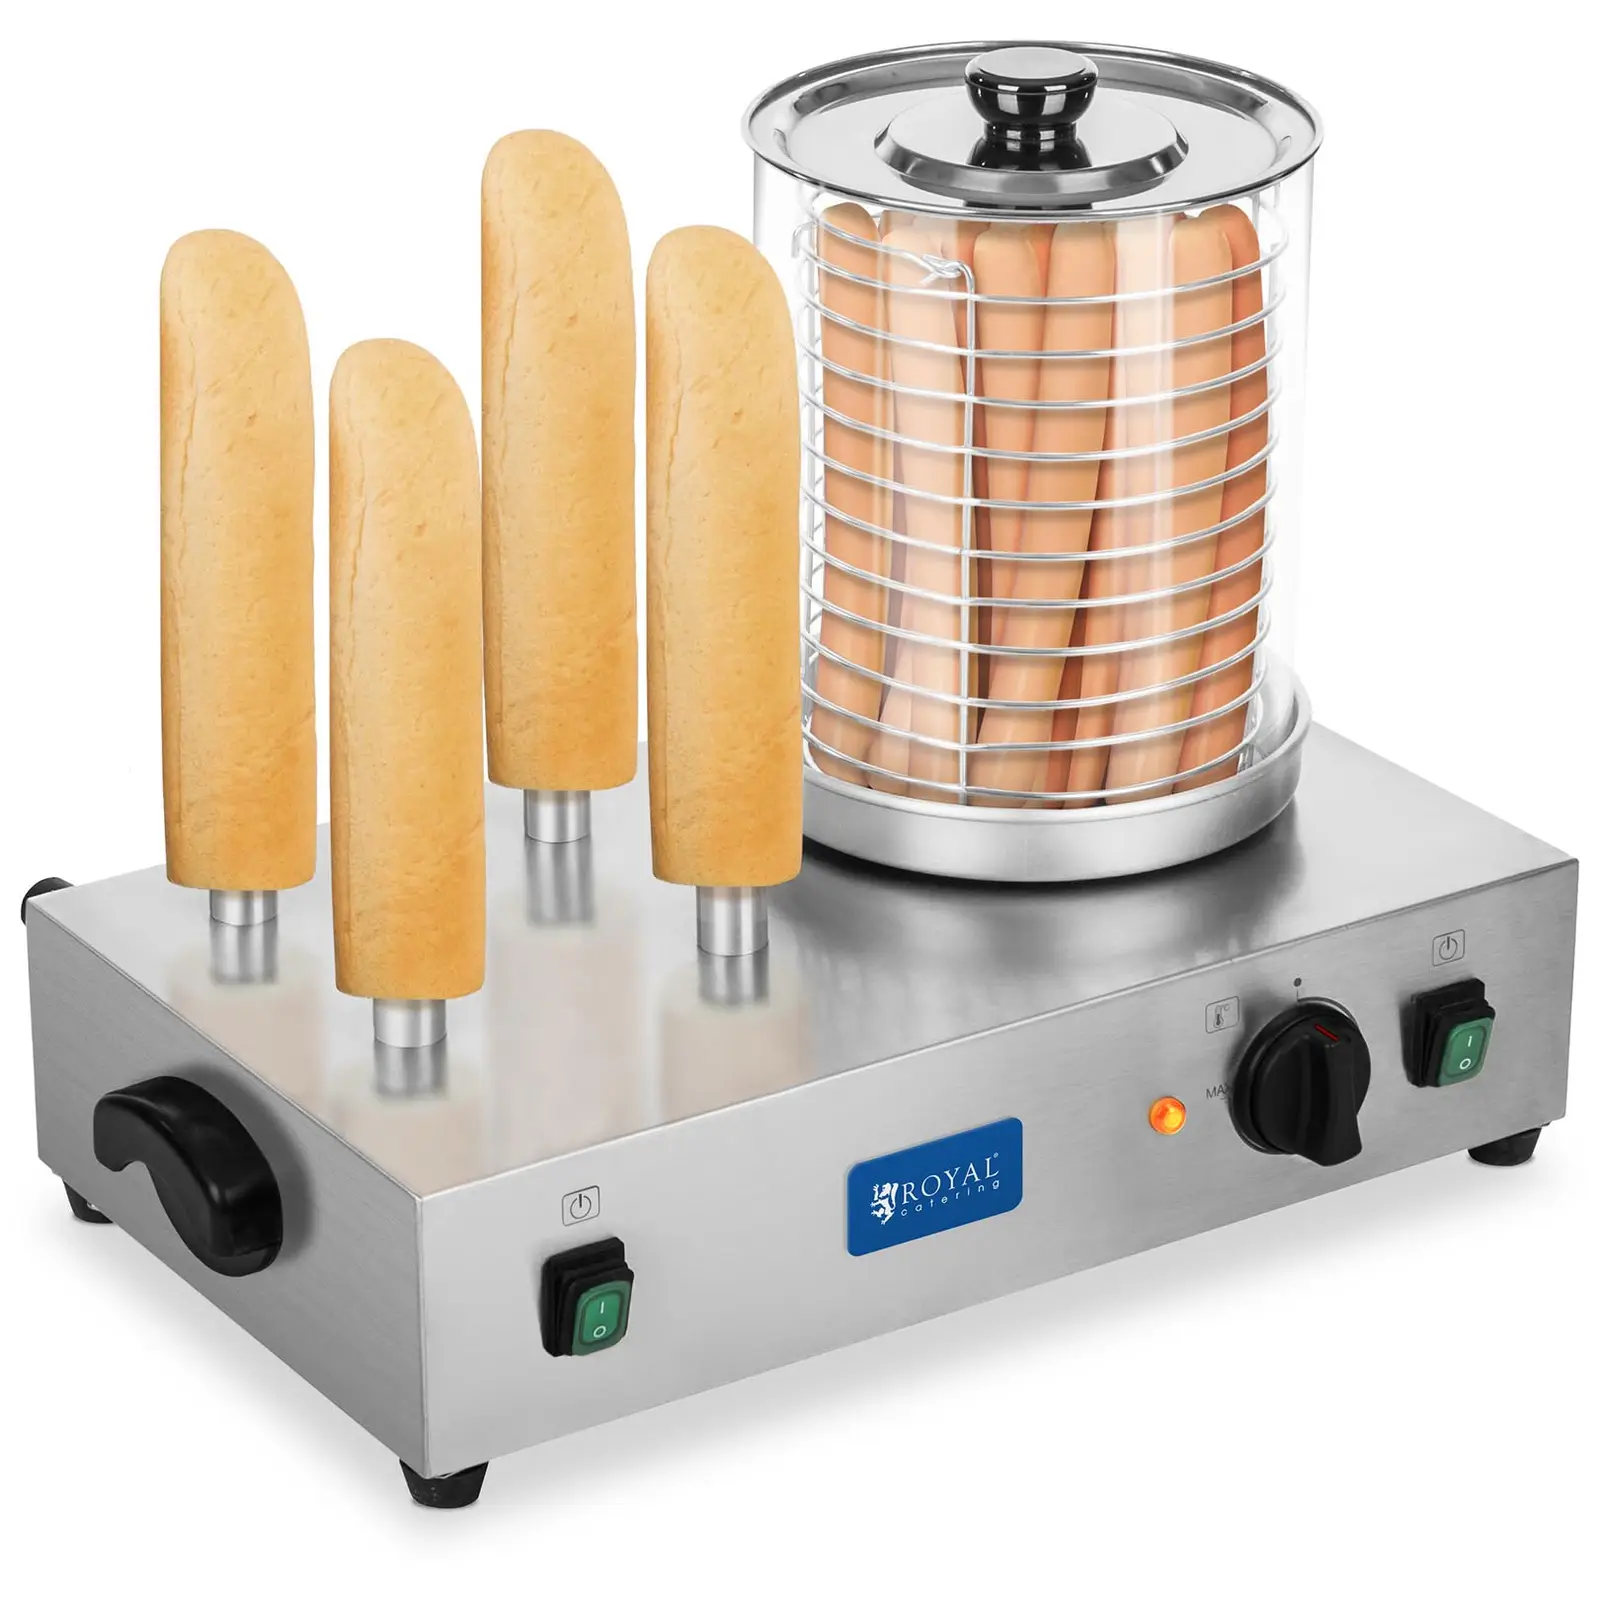 Hot Dog Maker - including Toasting Rods